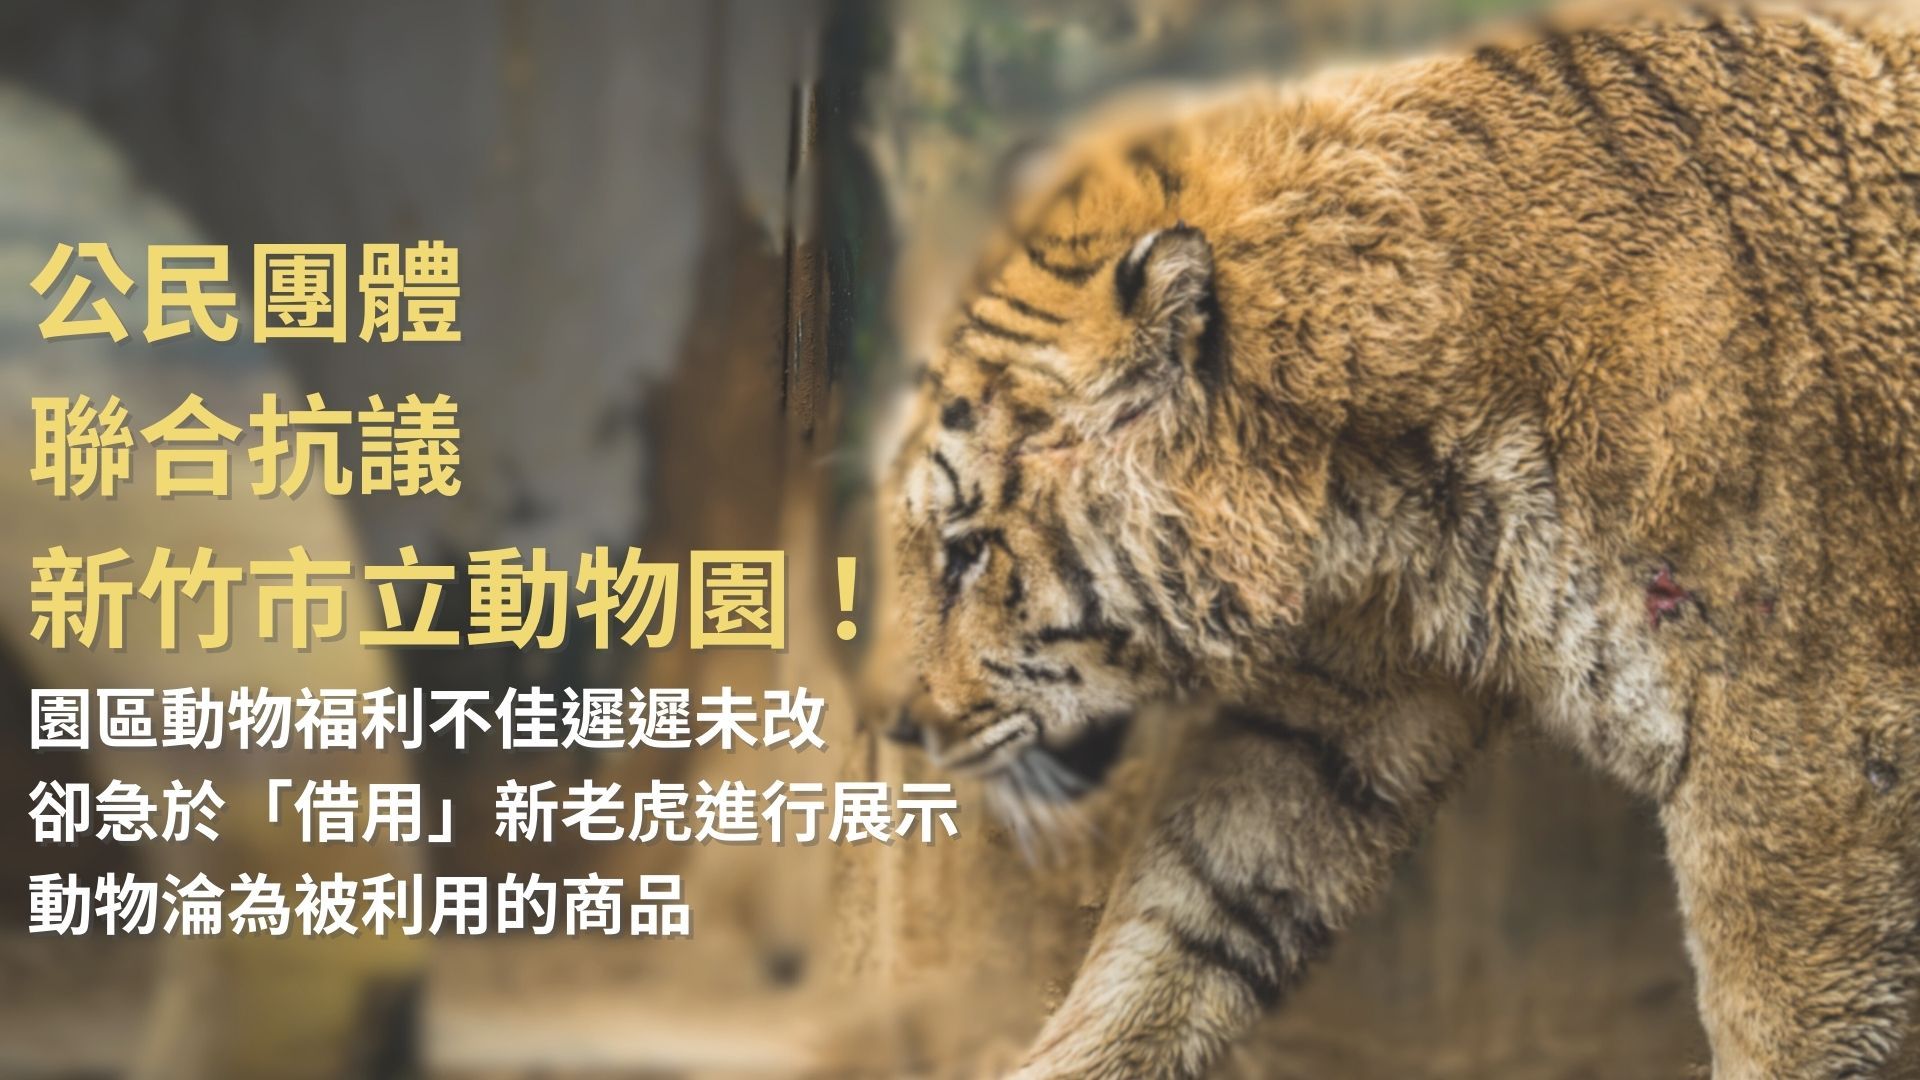 公民團體聯合抗議新竹市立動物園！ 園區動物福利不佳遲遲未改，卻急於「借用」新老虎進行展示動物淪為被利用的商品